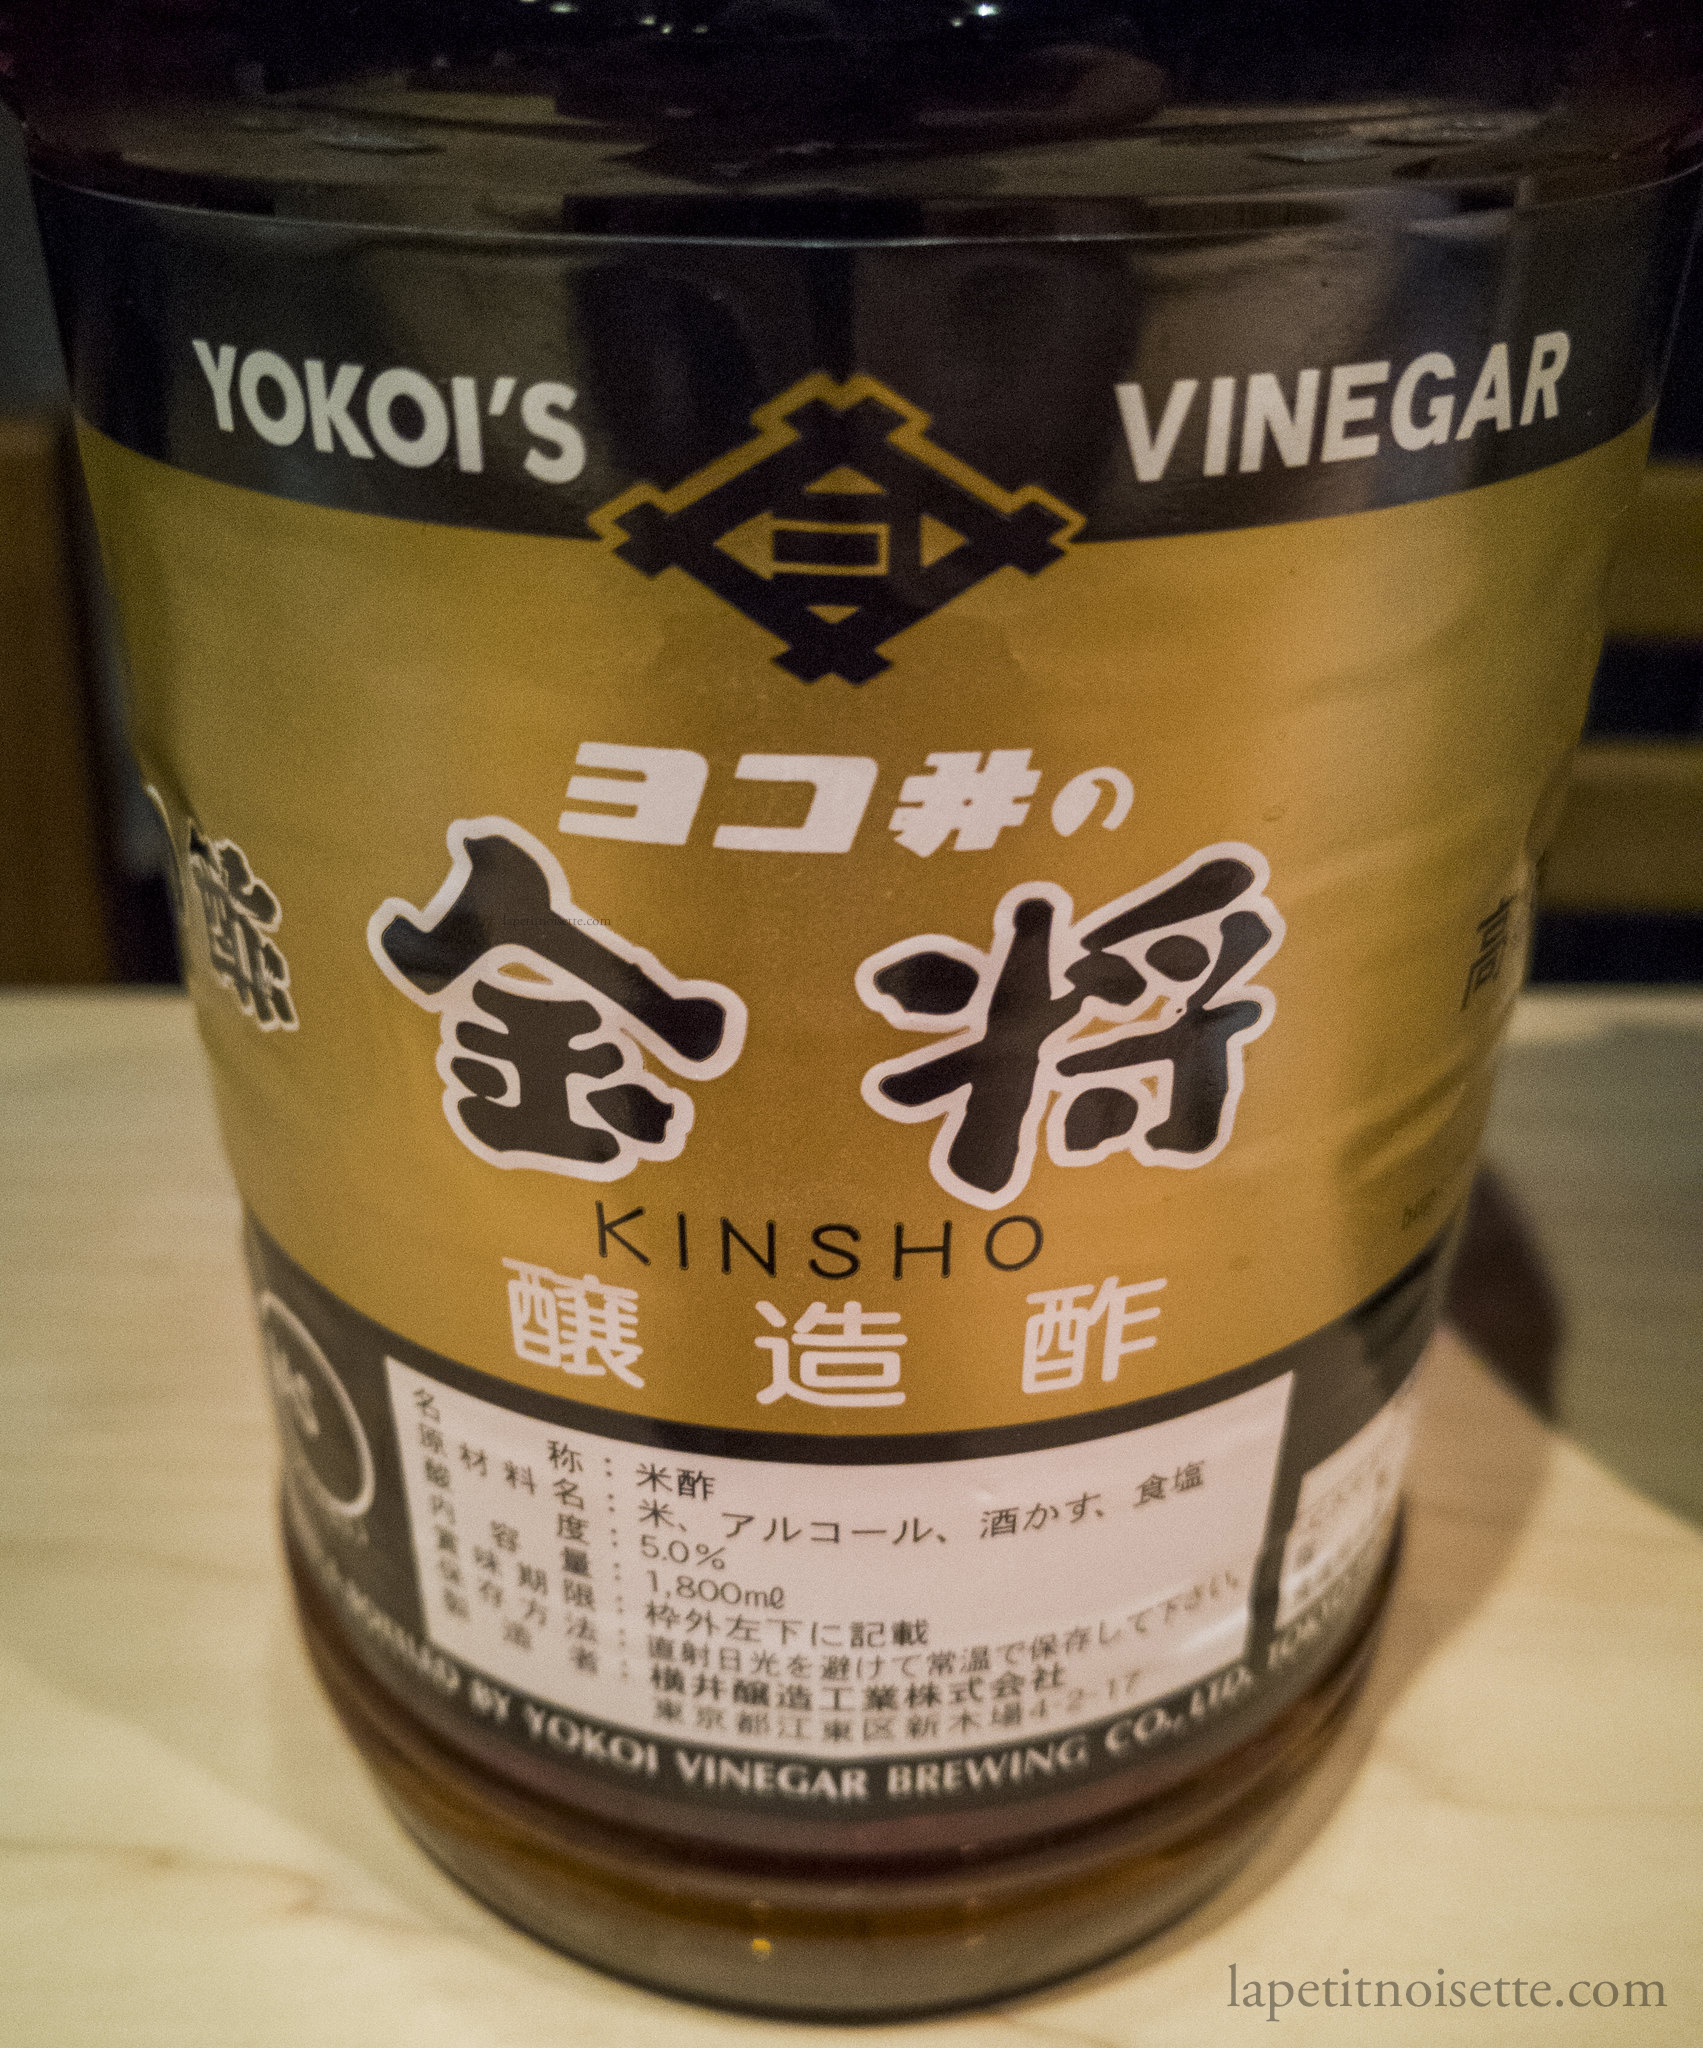 Yokoi's Kinsho akasu